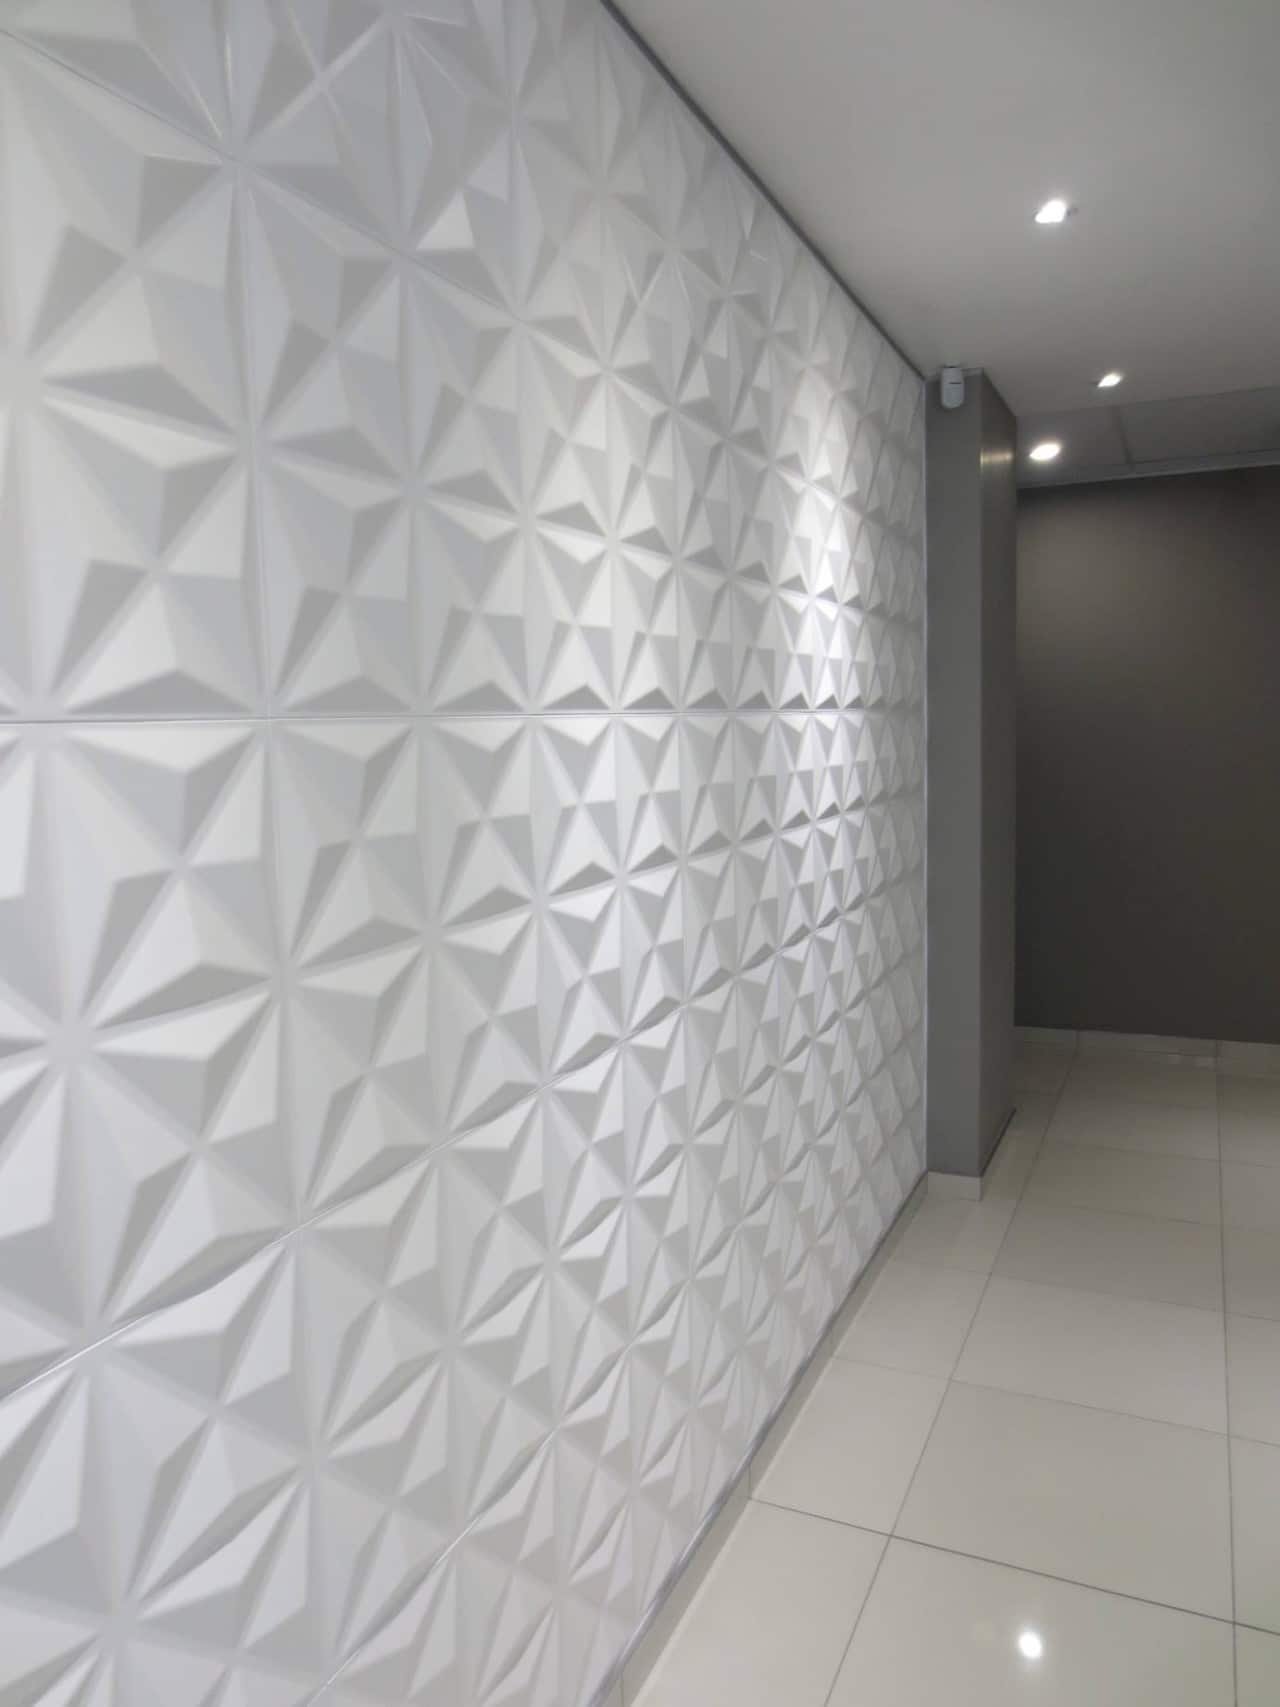 Цветная потолочная плитка, как выбрать дизайн поверхности, преимущества декоративного материала